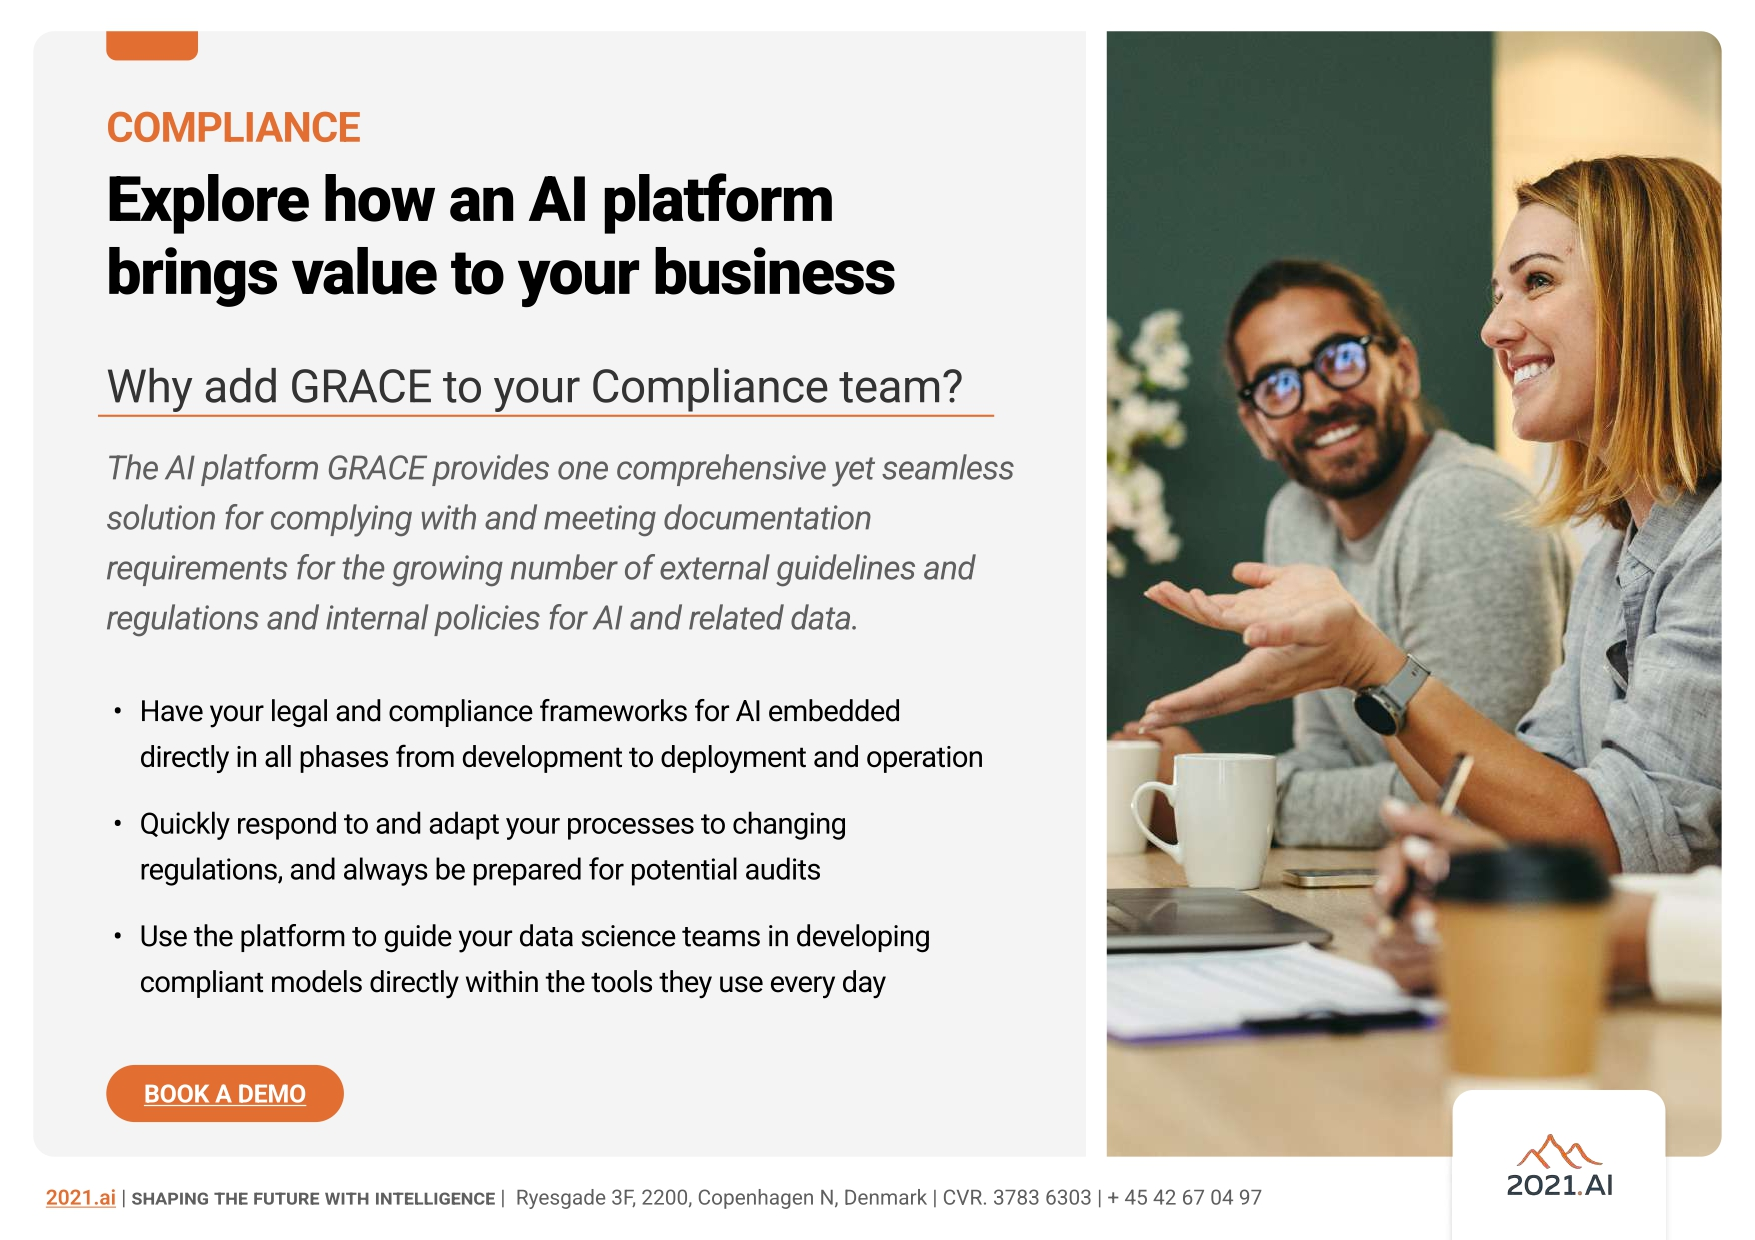 GRACE AI platform for compliance